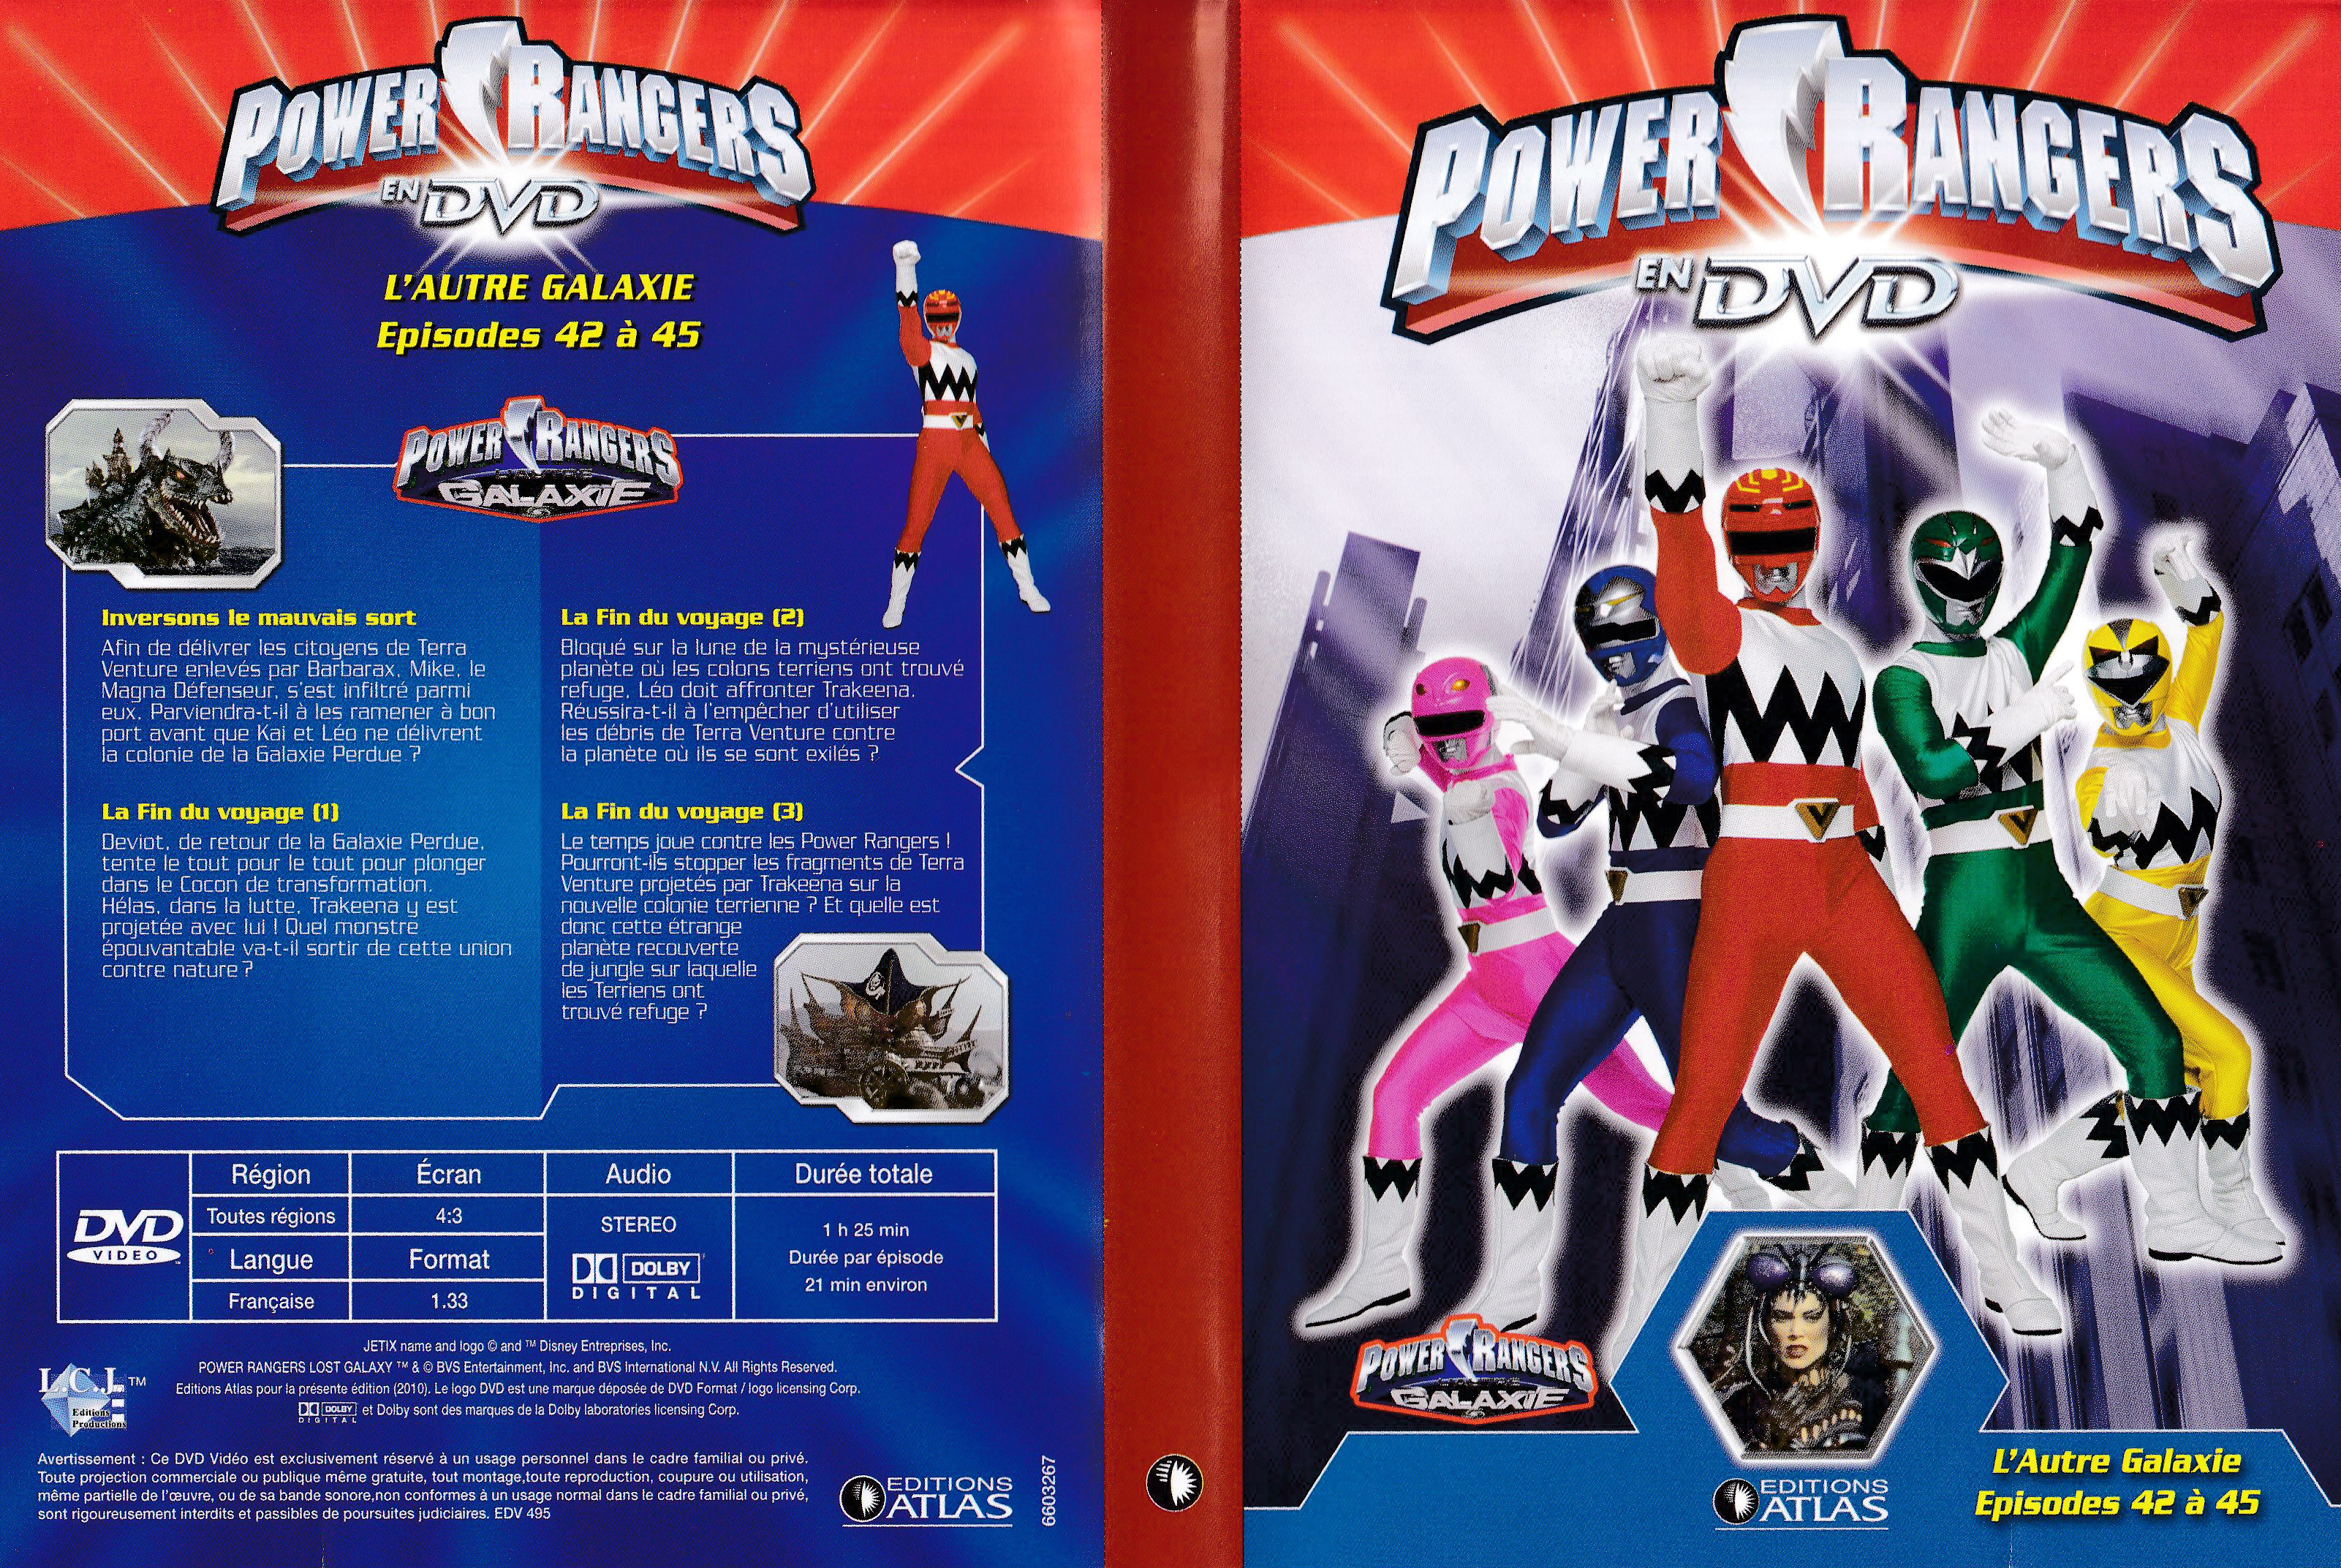 Power Rangers en DVD n°67